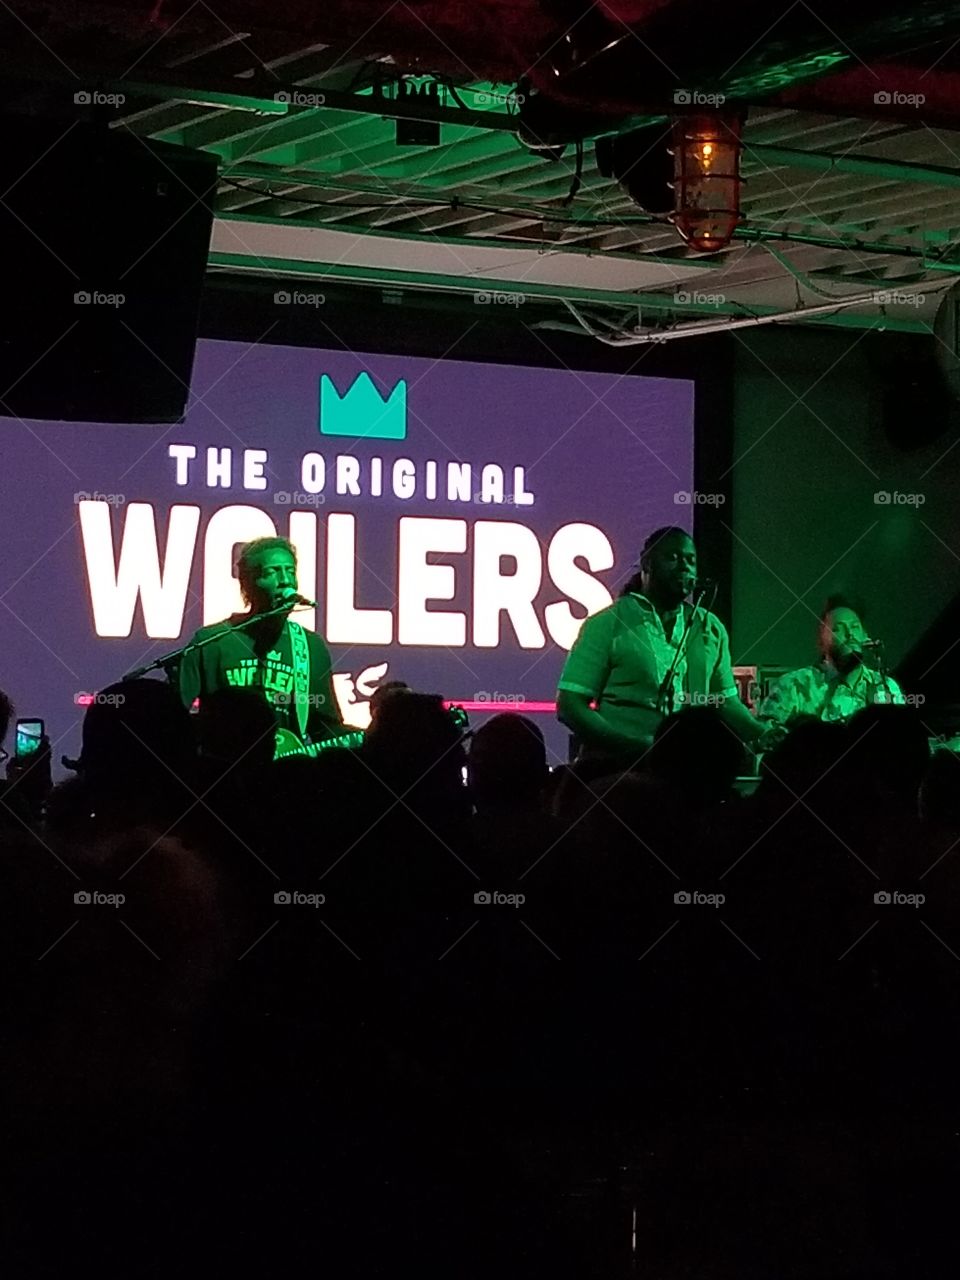 The Original Wailers